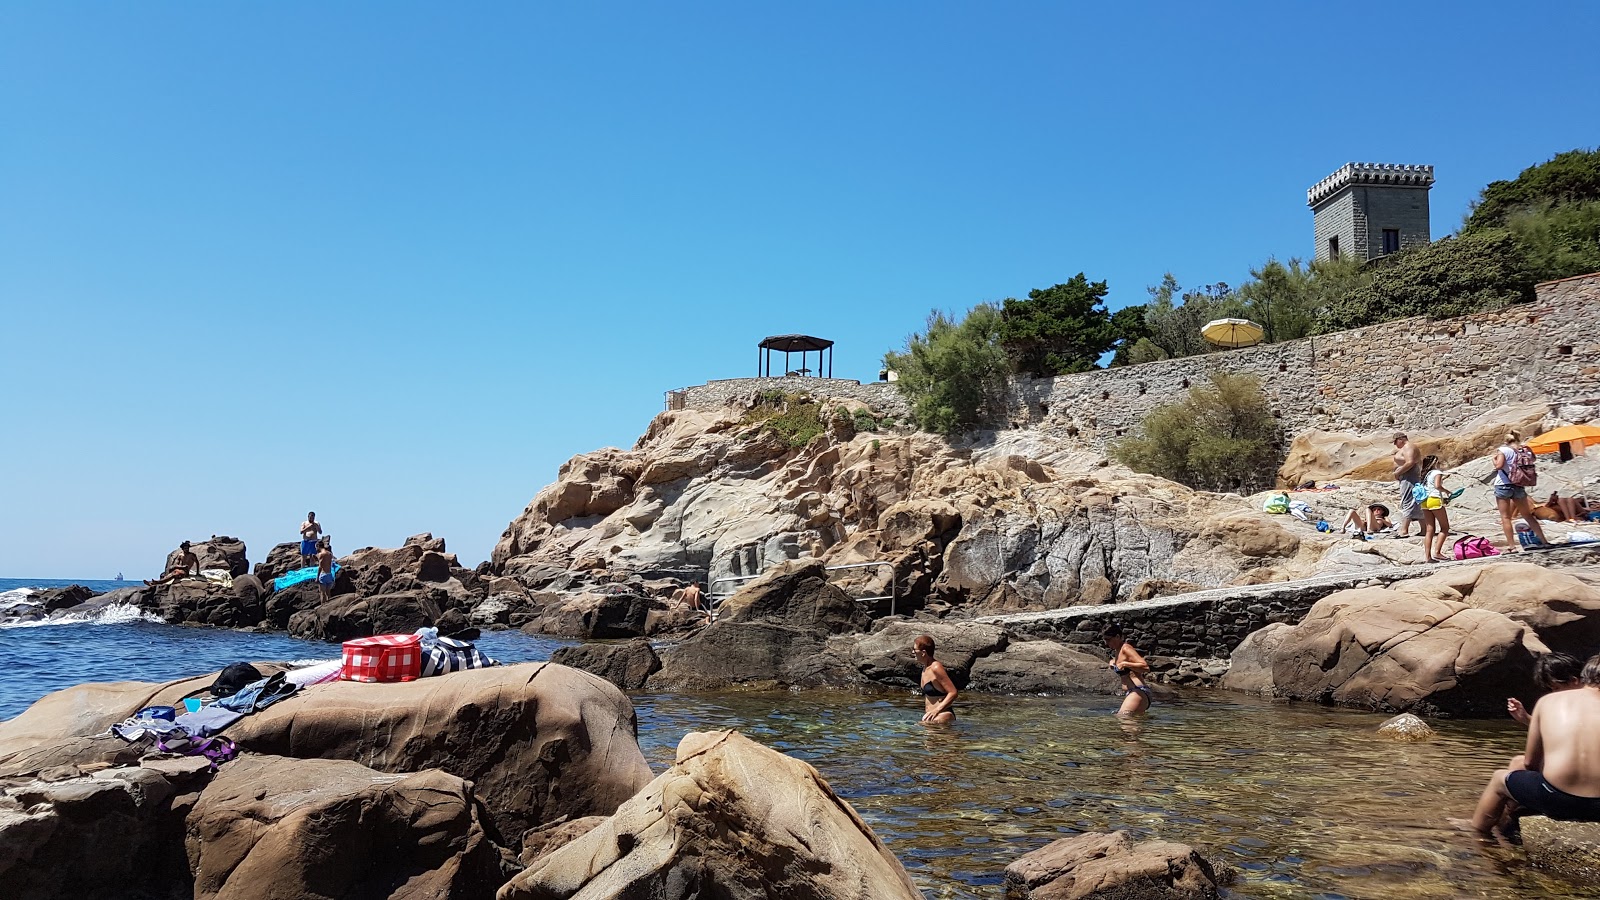 Foto van Spiaggia di Calafuria met hoog niveau van netheid